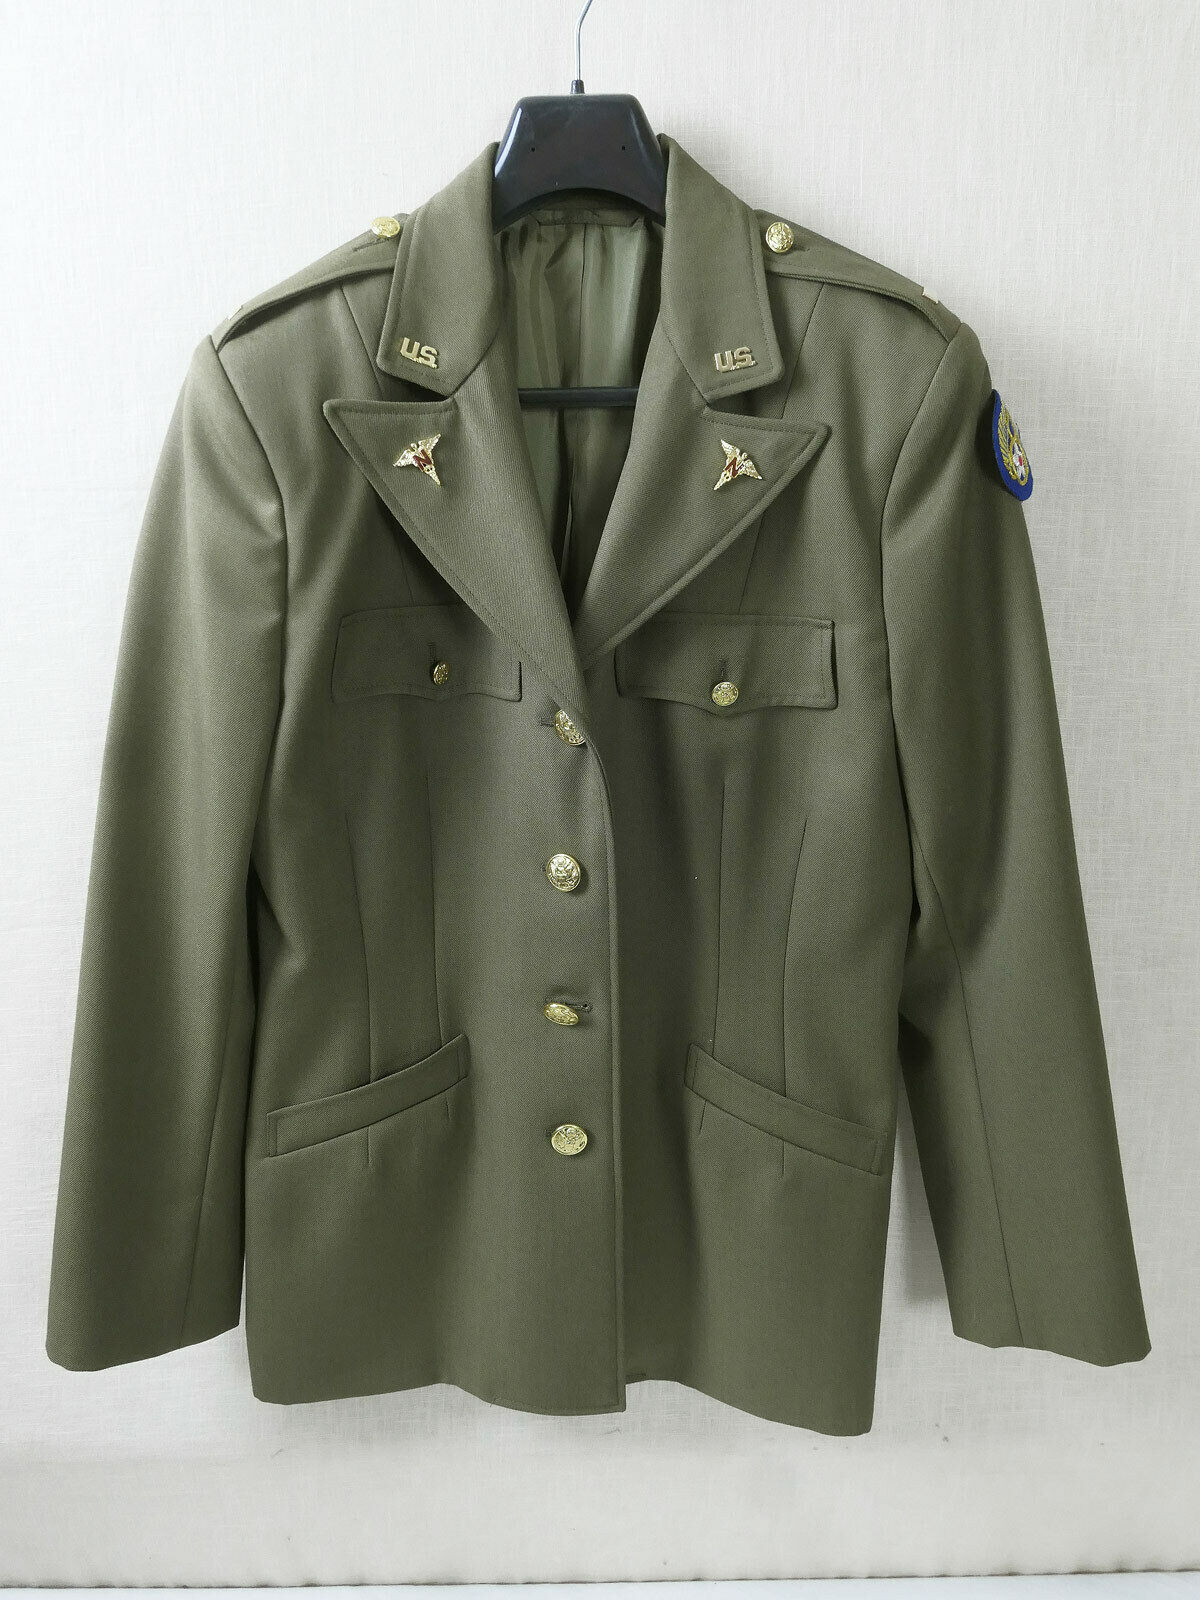 USAF WW2 Nurse Corps Officer 2nd Lt. Class A Uniform Jacket 